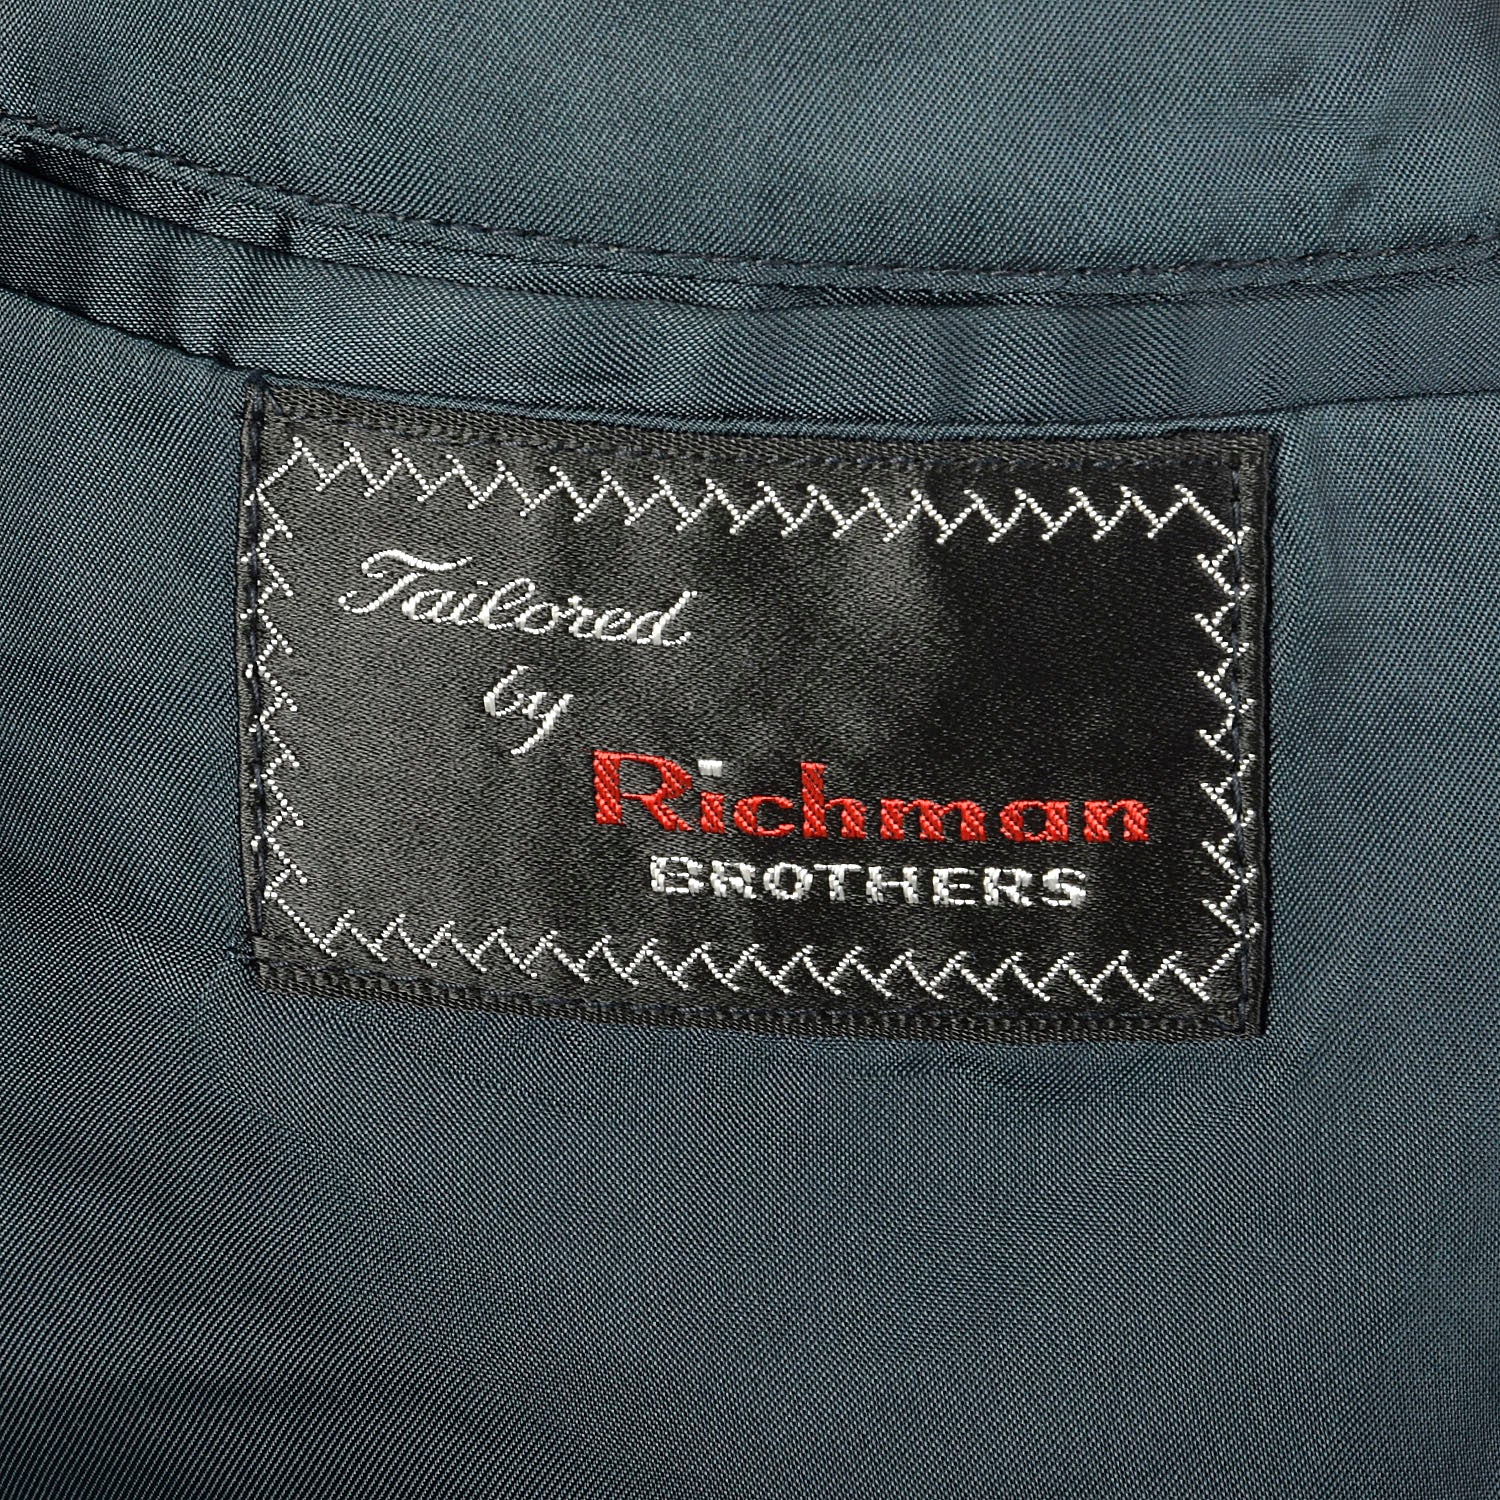 44L 1960s 2pc Suit Blue Herringbone 2 Button Slim Lapel Richman Brothers Flat Front Pants